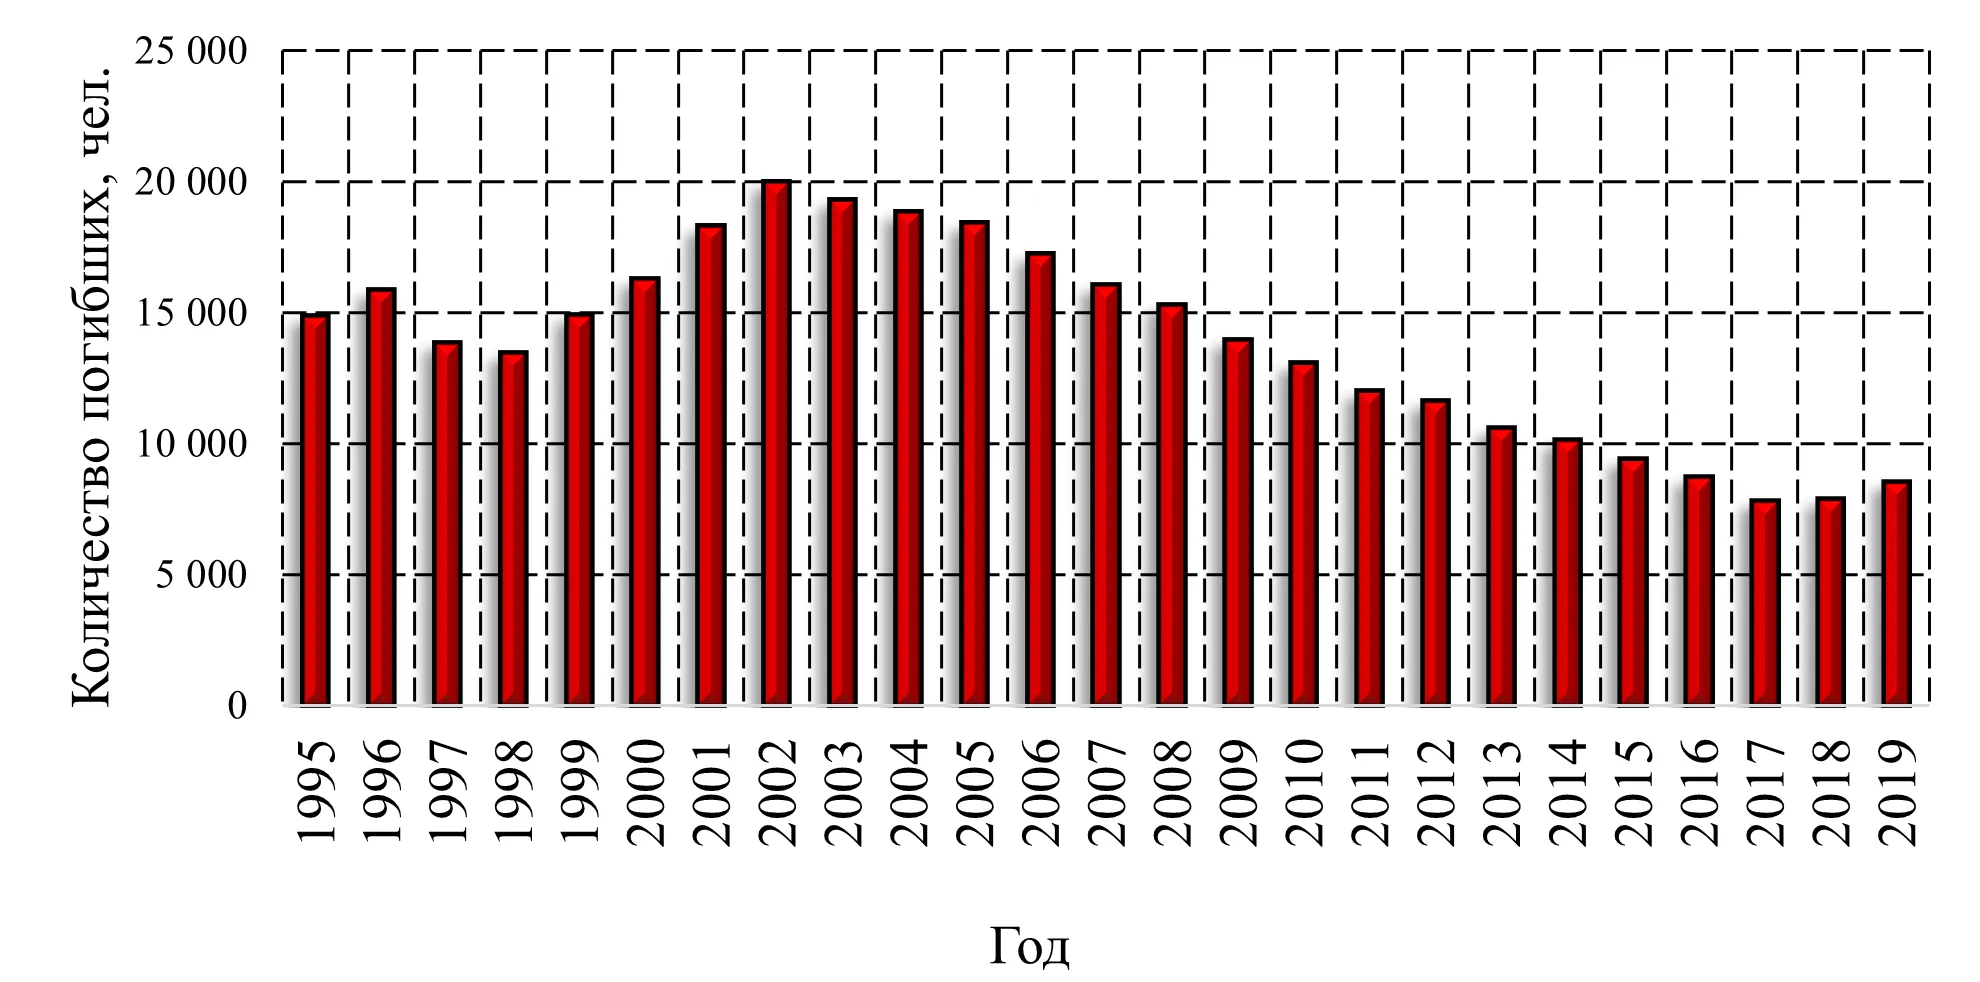 Гистограмма распределения количества погибших в Российской Федерации с 1995 по 2019 года